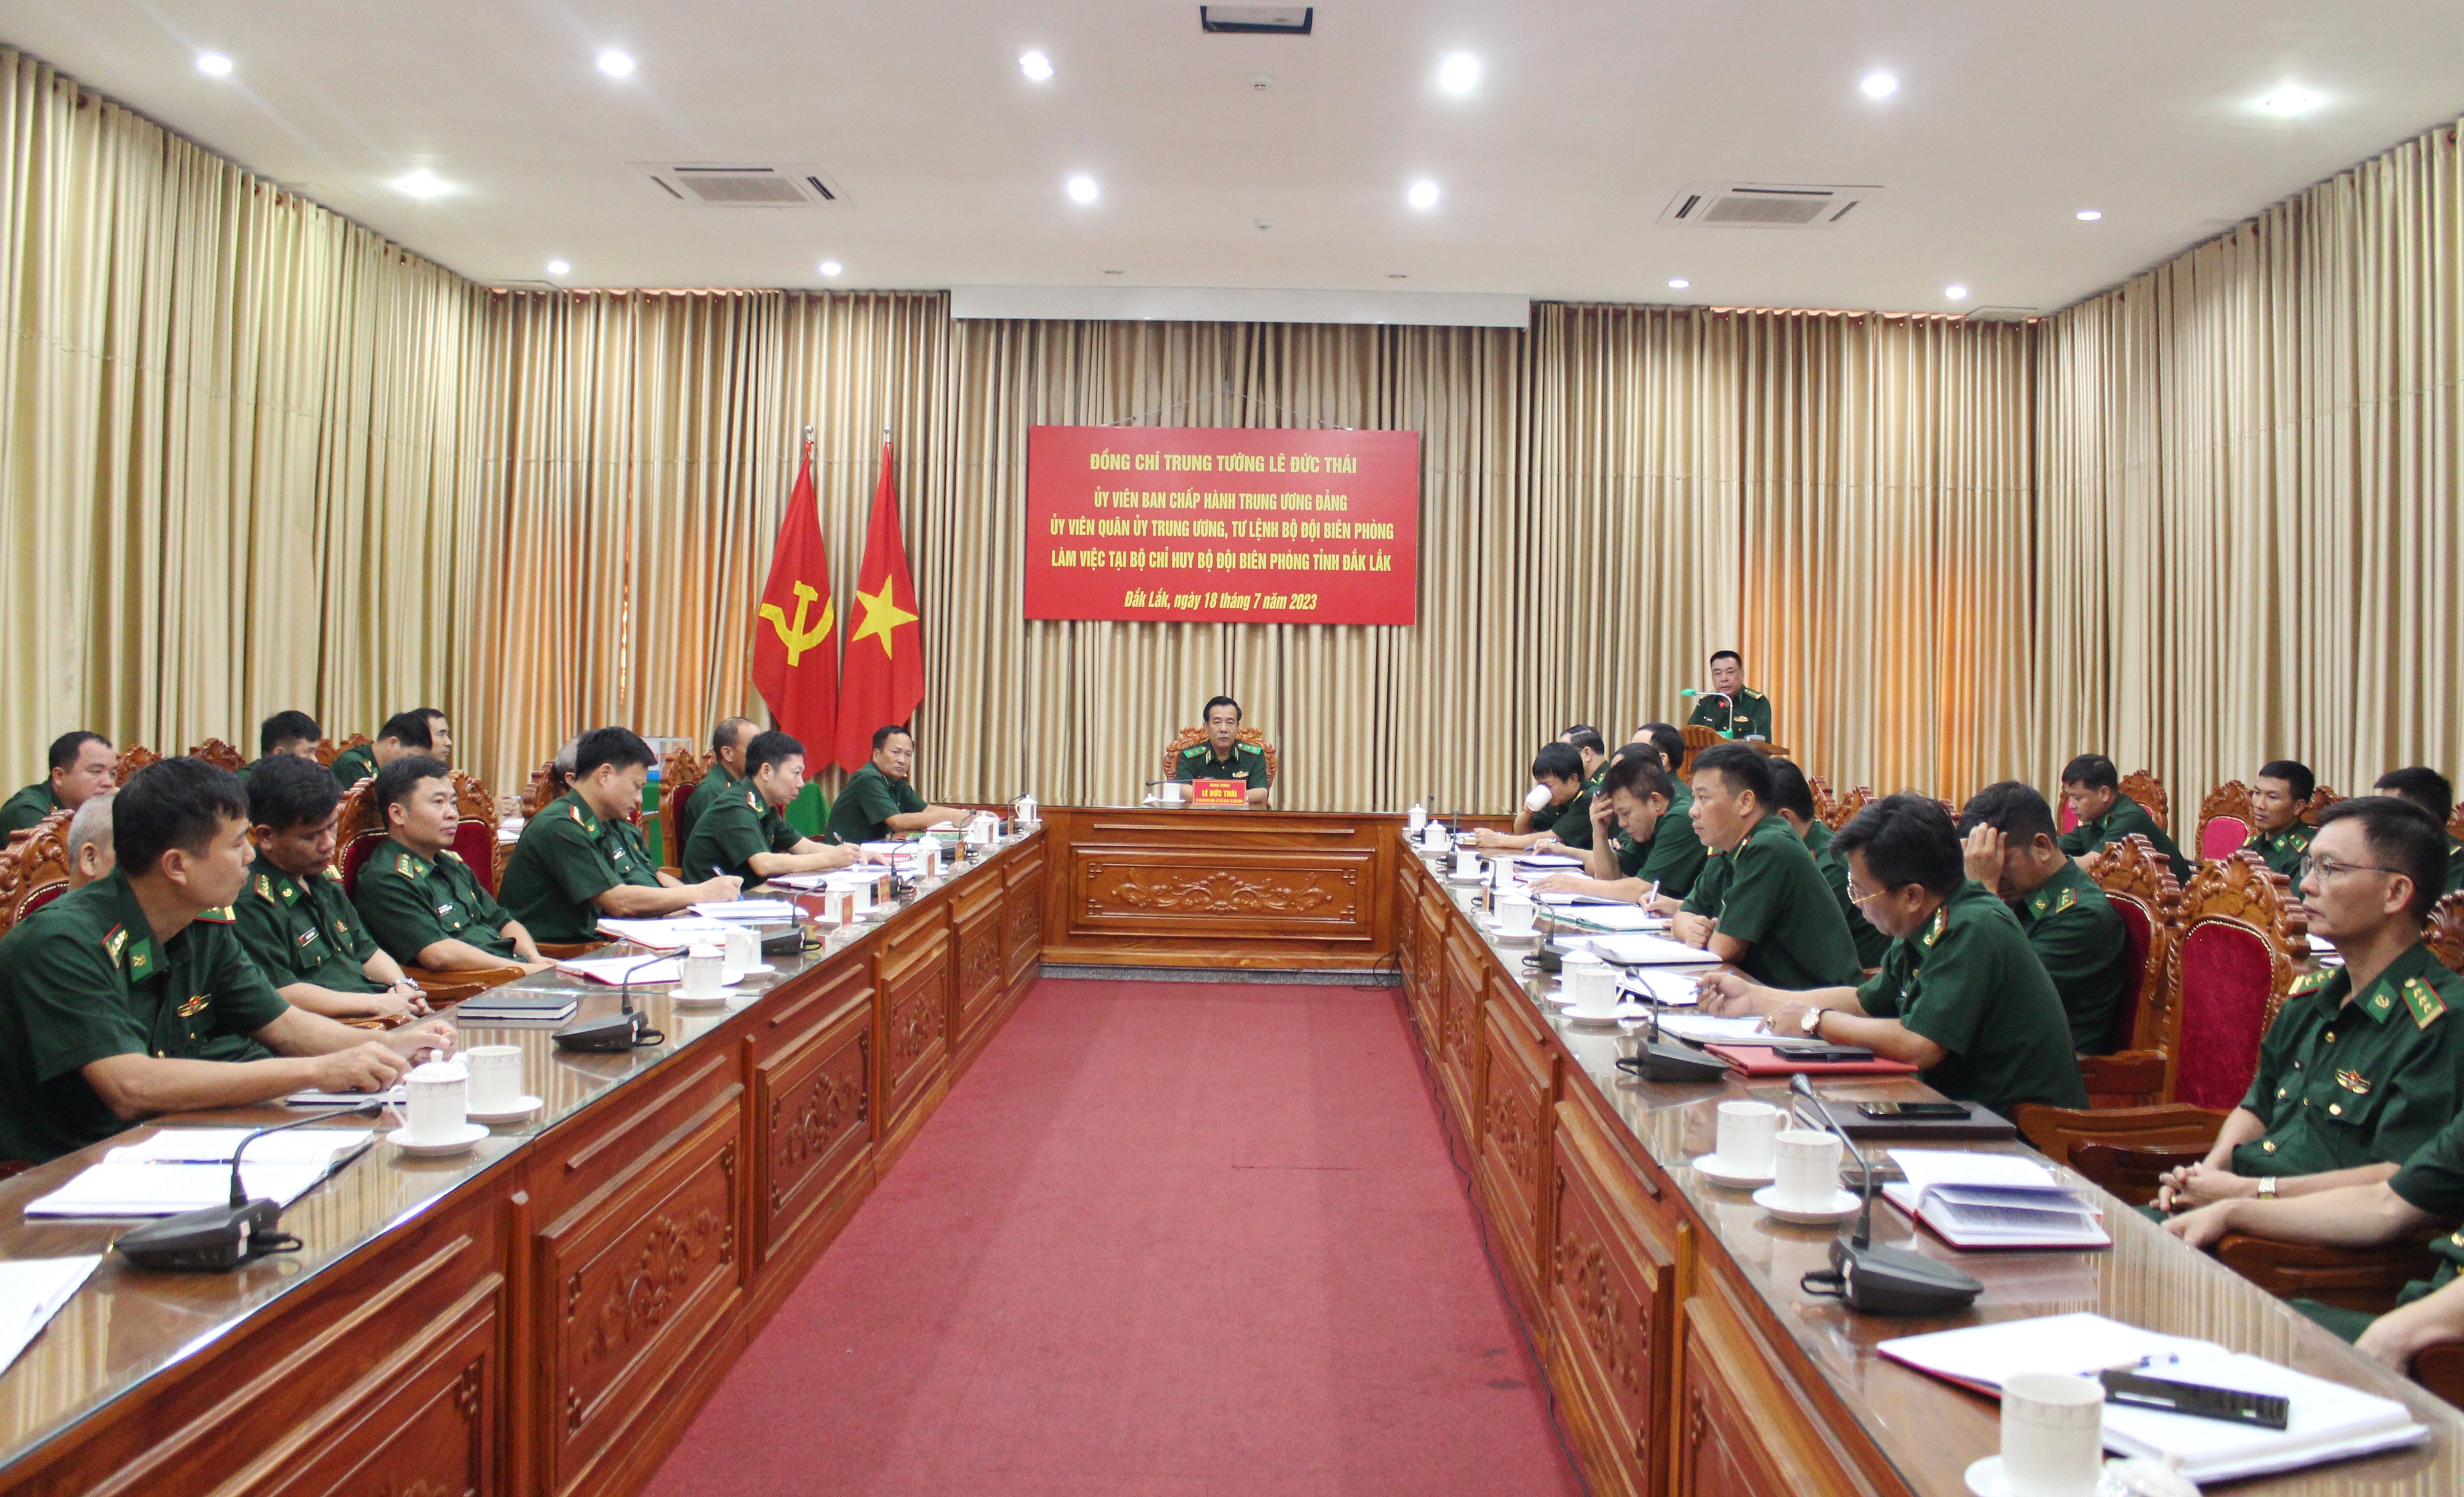 Bộ Tư lệnh Bộ đội Biên phòng làm việc tại Bộ Chỉ huy Bộ đội Biên phòng tỉnh Đắk Lắk